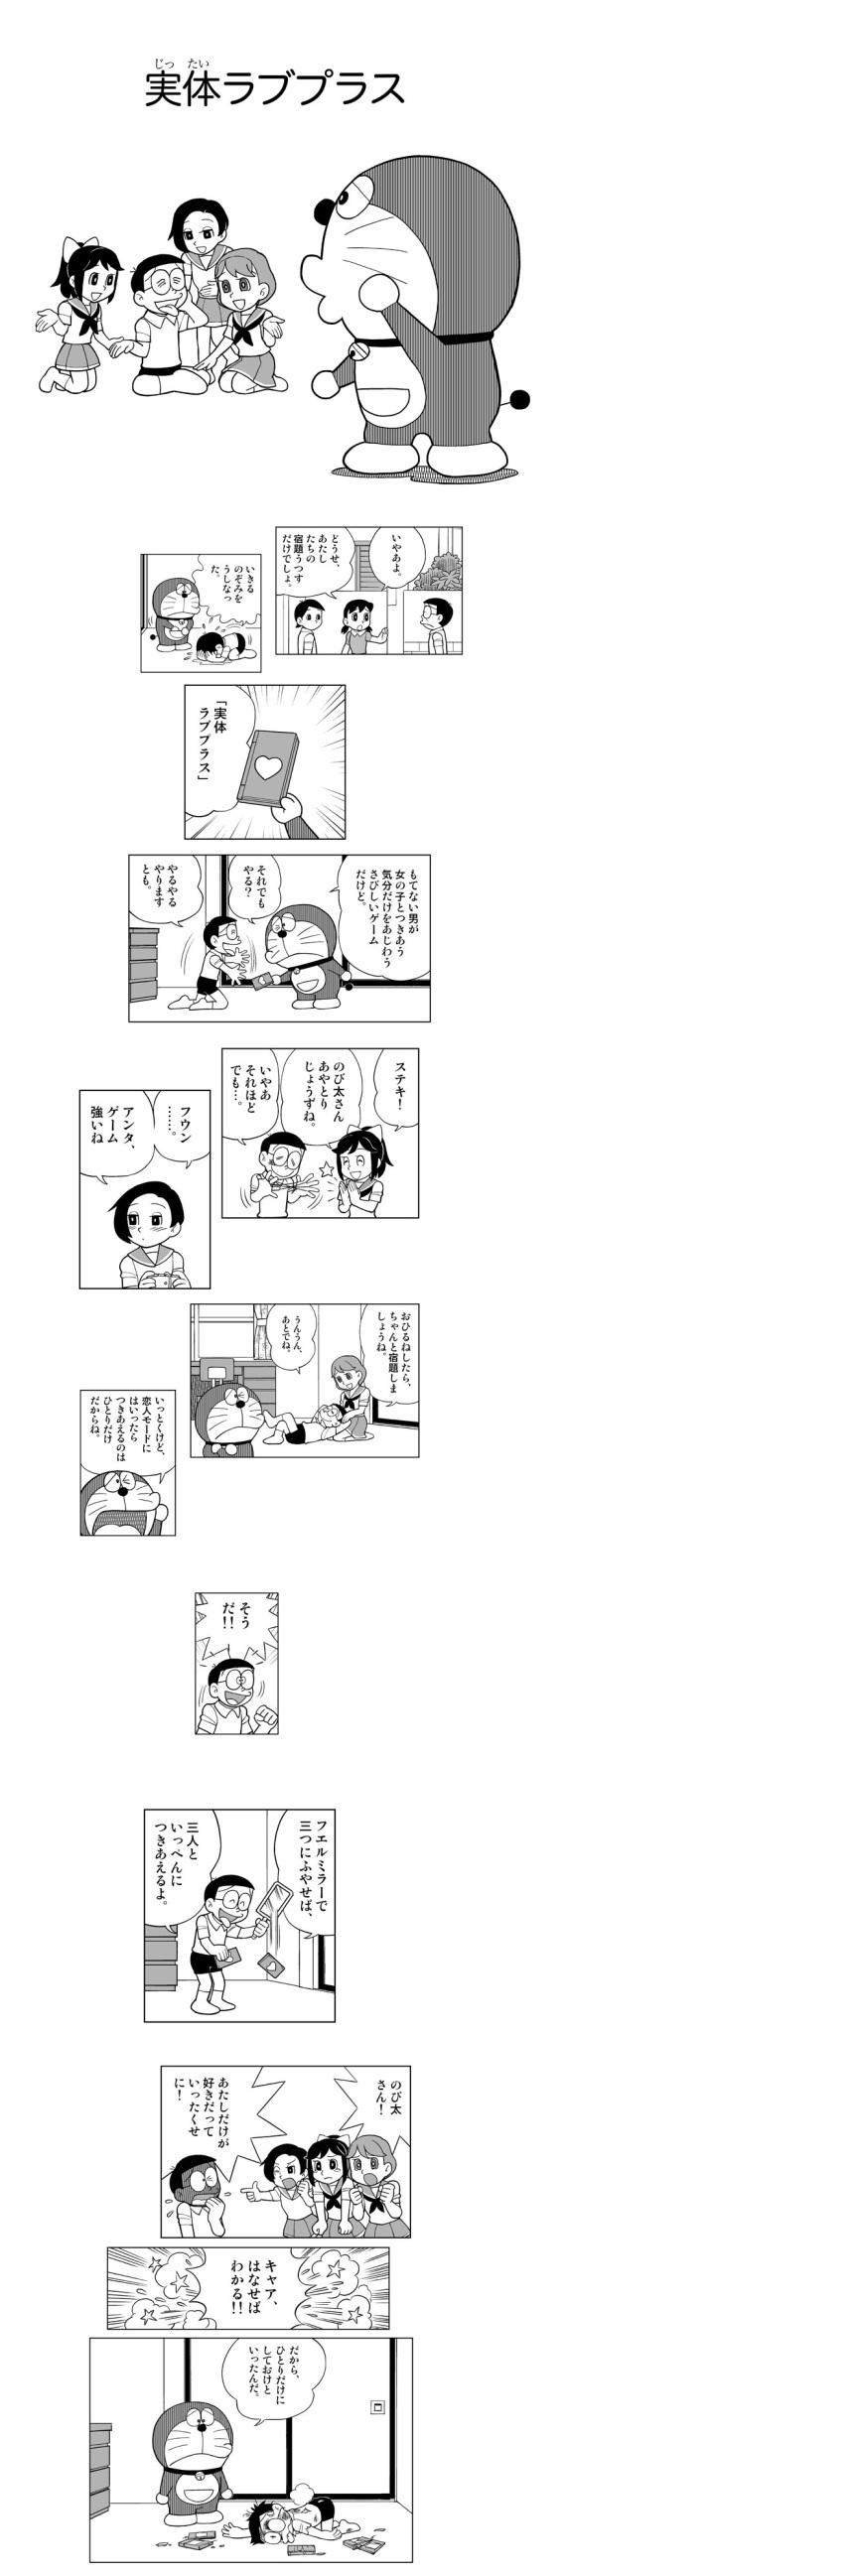 anegasaki_nene comic doraemon doraemon_(character) fujiko_f_fujio_(style) highres kobayakawa_rinko love_plus nobi_nobita parody style_parody takane_manaka